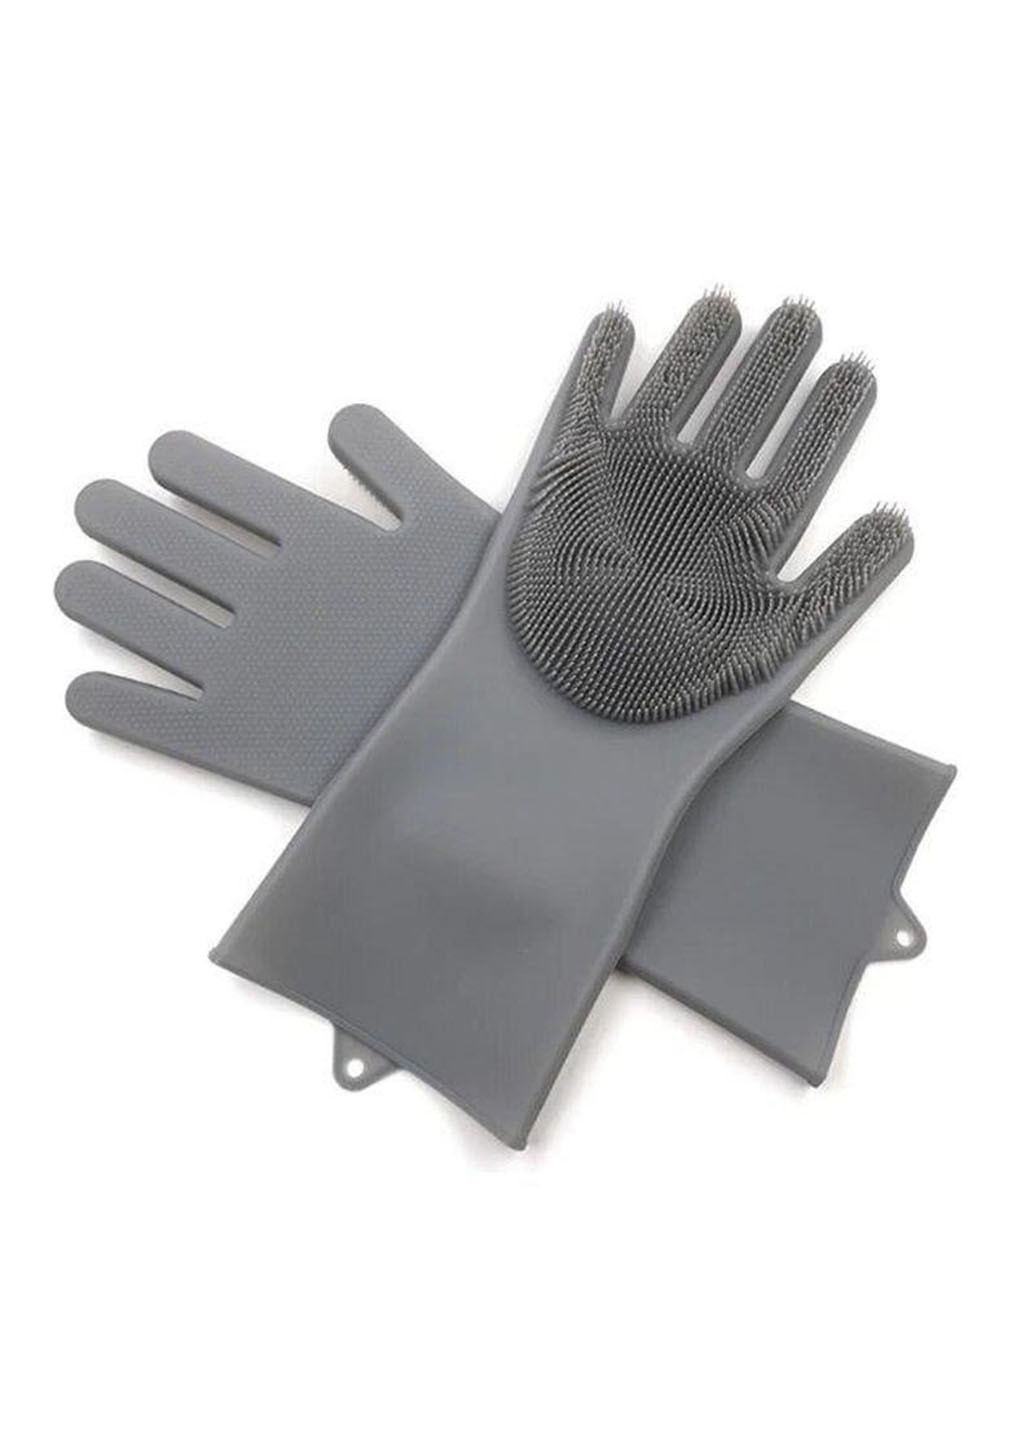 Силиконовые перчатки универсальные для мойки посуды и уборки дома Better Glove Idea (260555028)